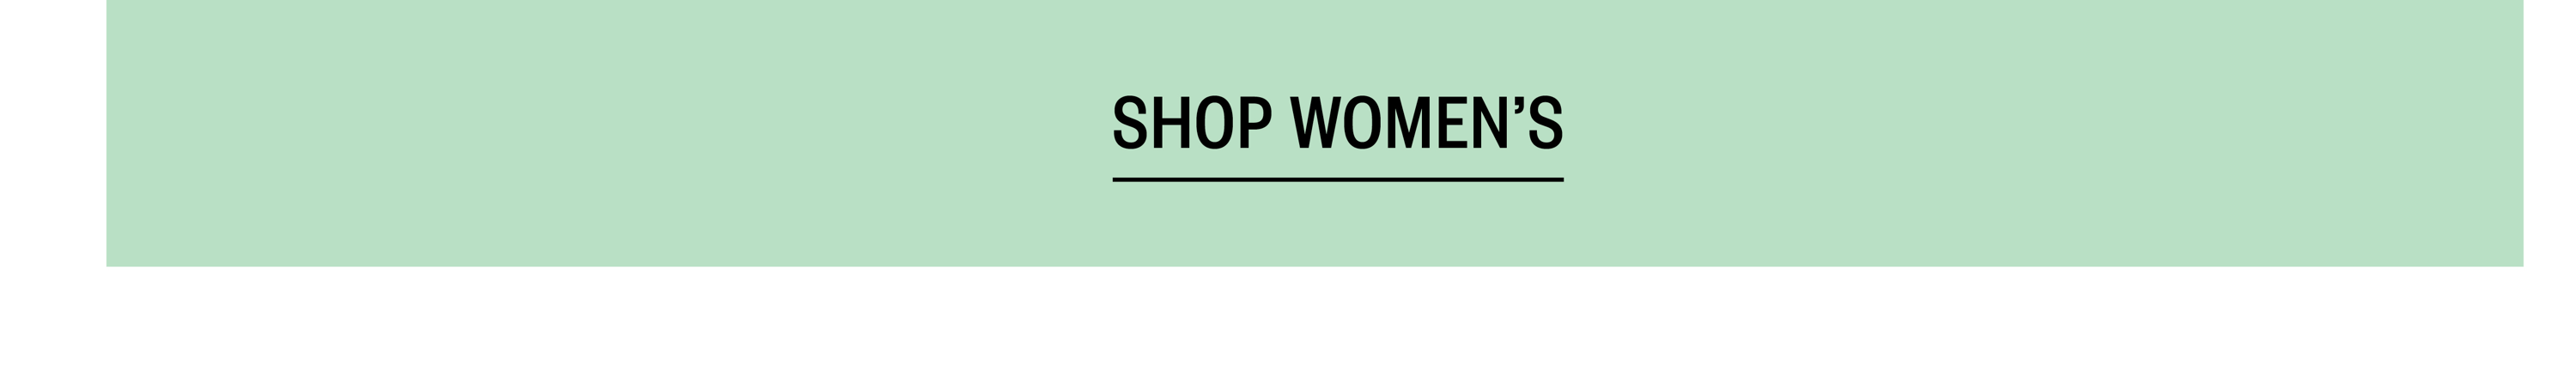 Shop Women's Black Friday Sale